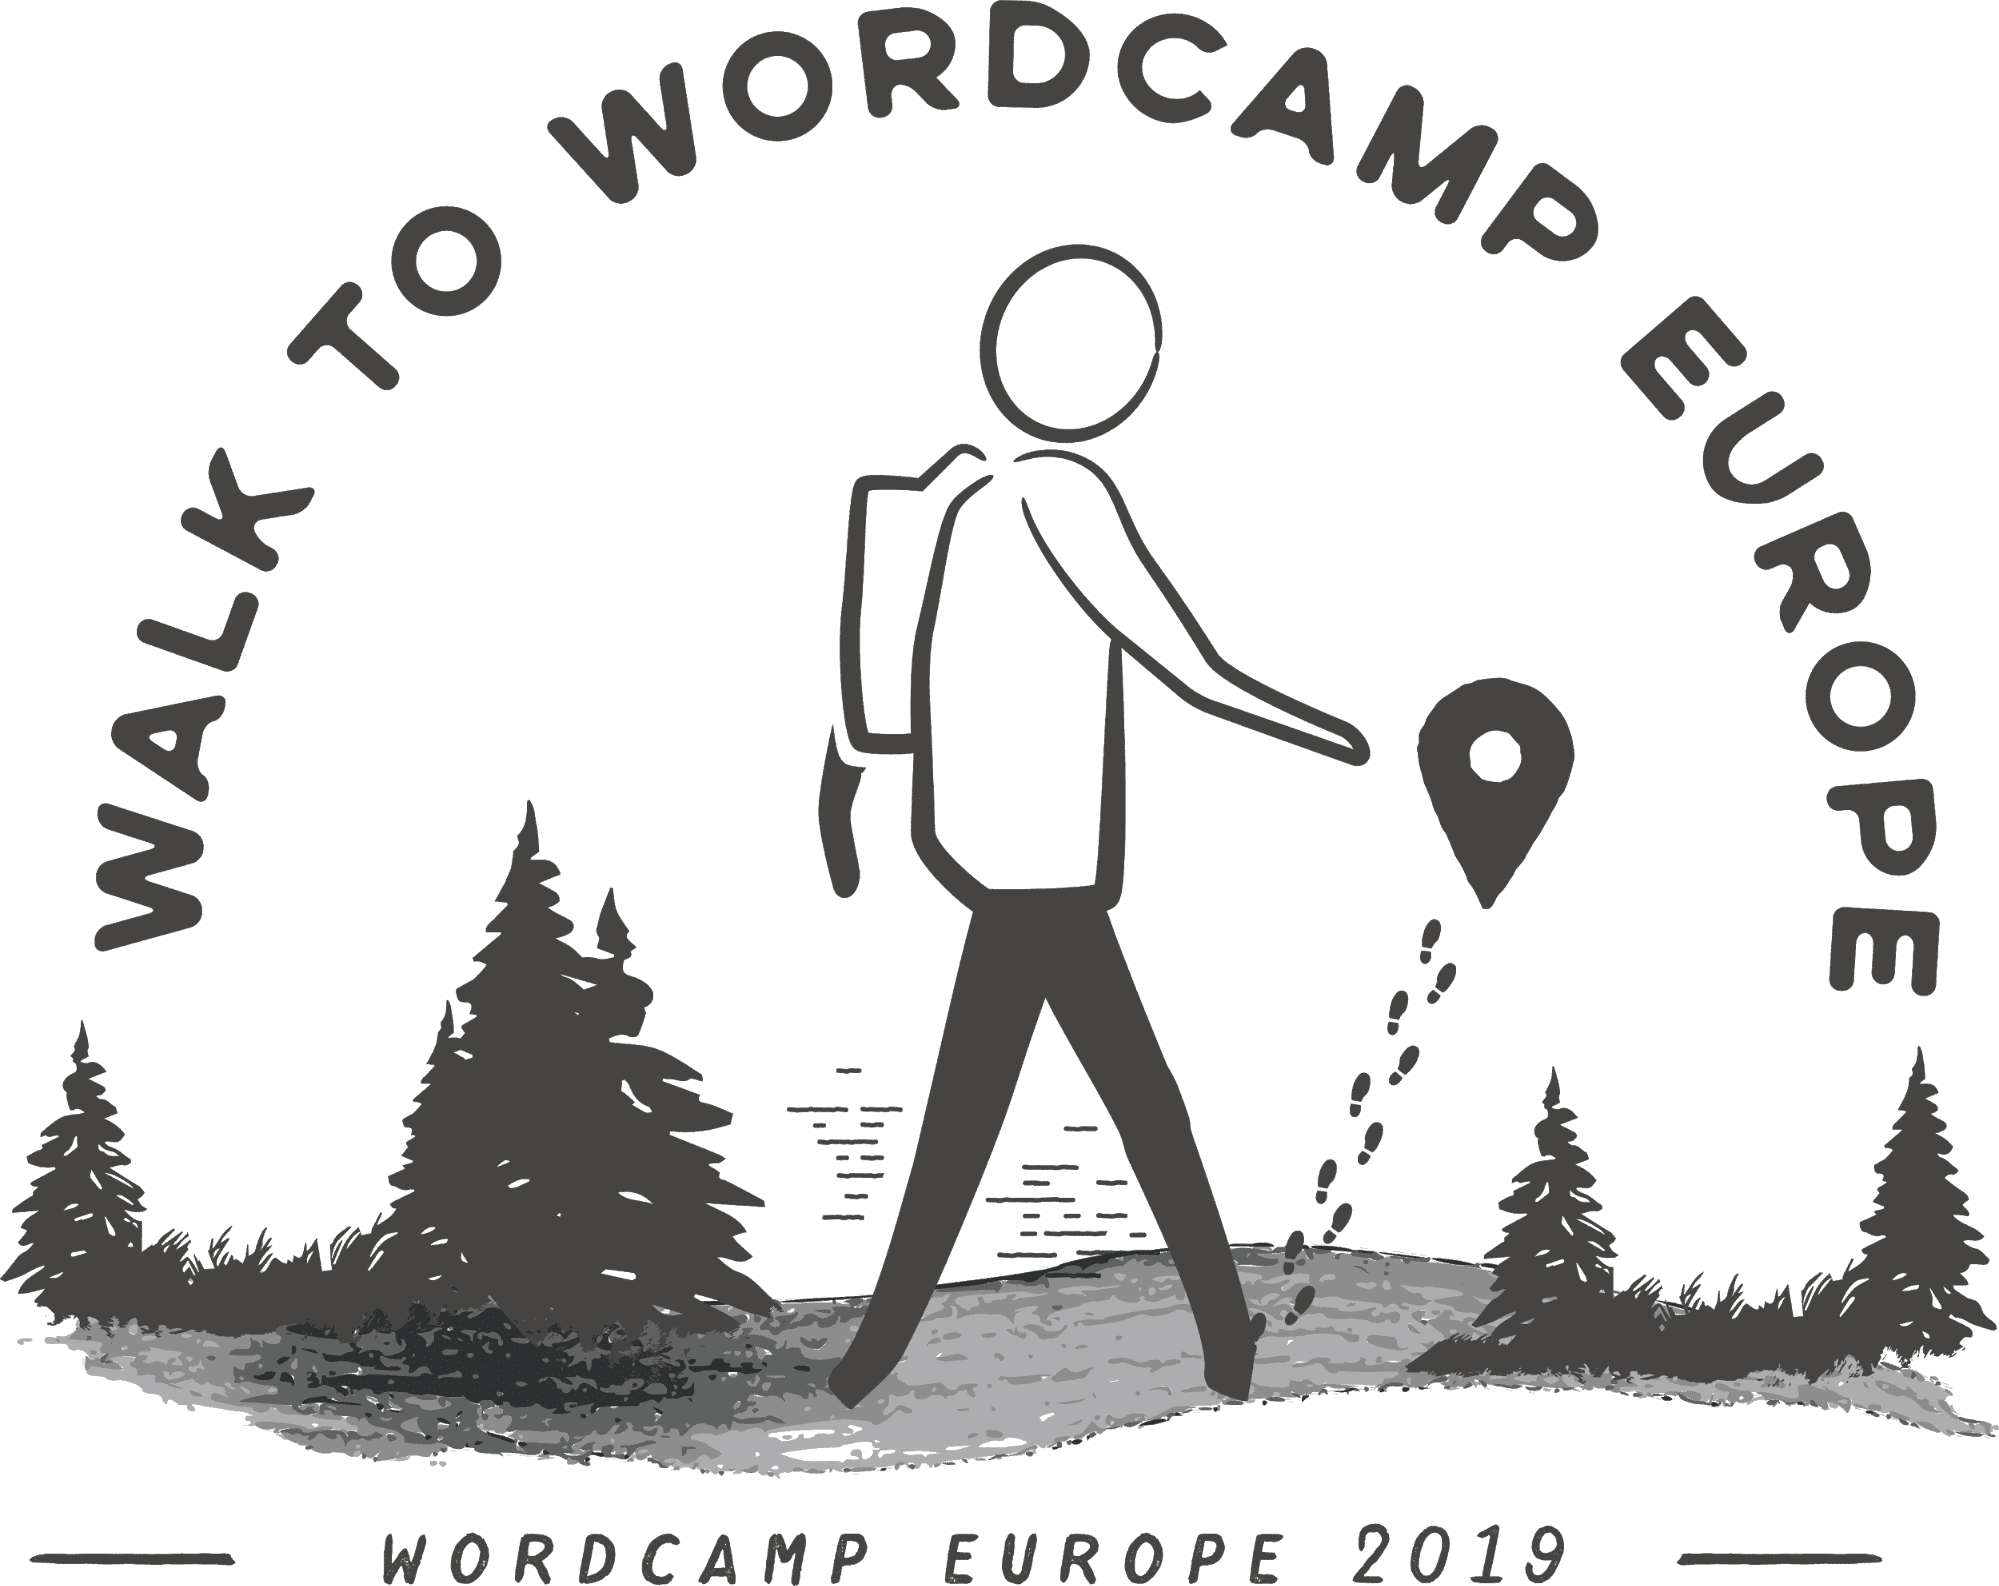 Walk to WordCamp Europe